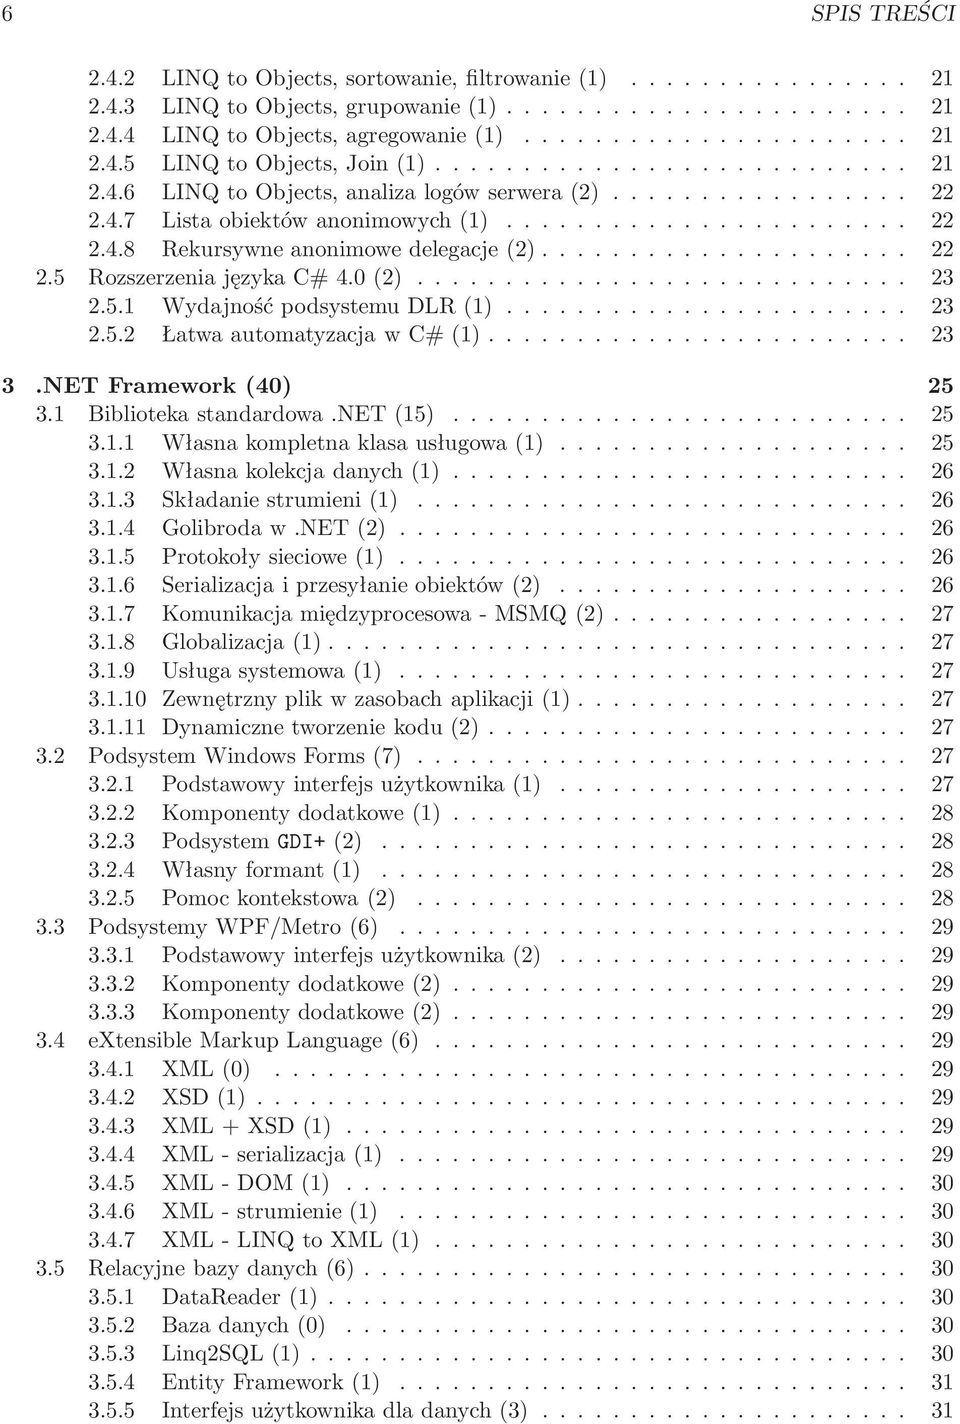 .. 23 3.NET Framework(40) 25 3.1 Bibliotekastandardowa.NET(15)... 25 3.1.1 Własnakompletnaklasausługowa(1)... 25 3.1.2 Własnakolekcjadanych(1)... 26 3.1.3 Składaniestrumieni(1)... 26 3.1.4 Golibrodaw.